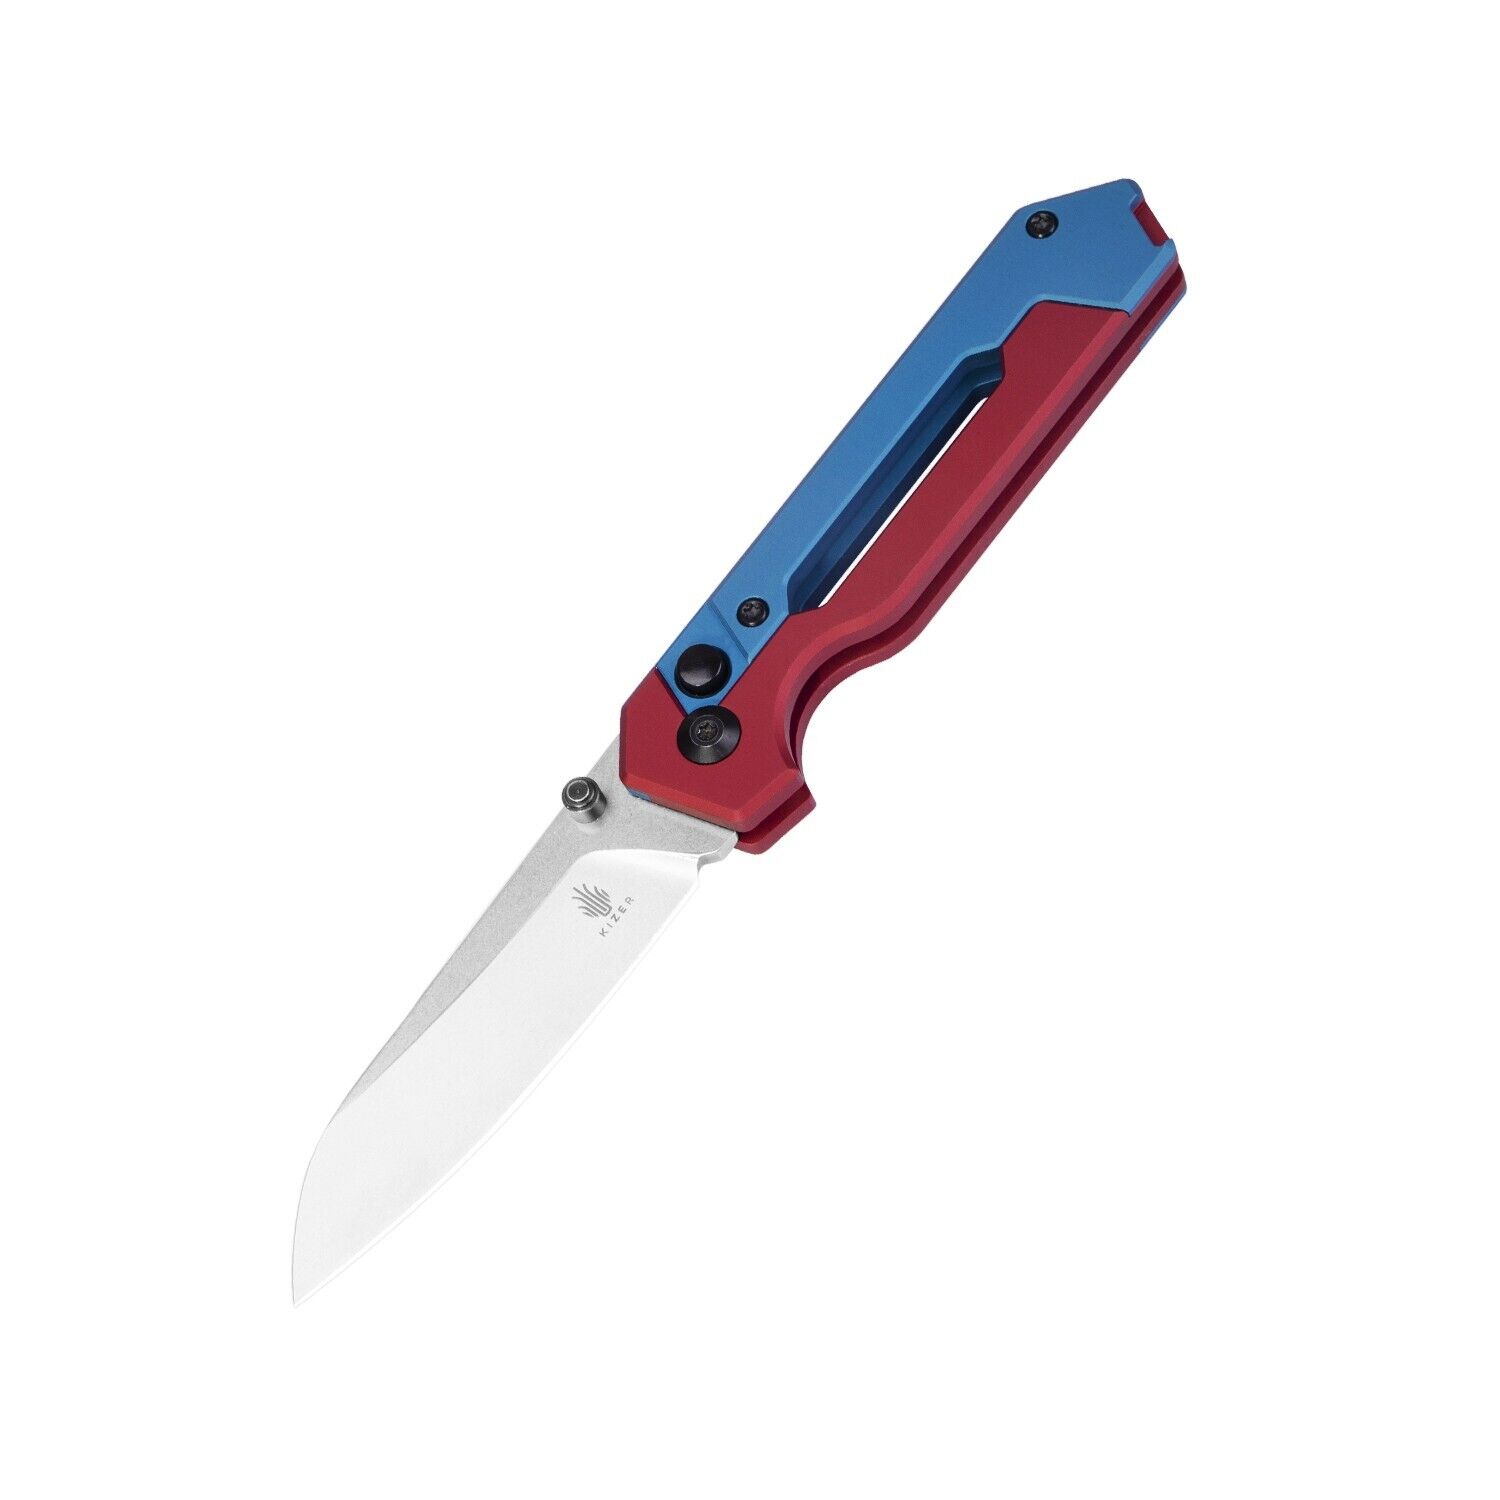 Kizer  Hyper Pocket Knife Red & Blue Aluminium Handle S35VN Steel Ki3632A1